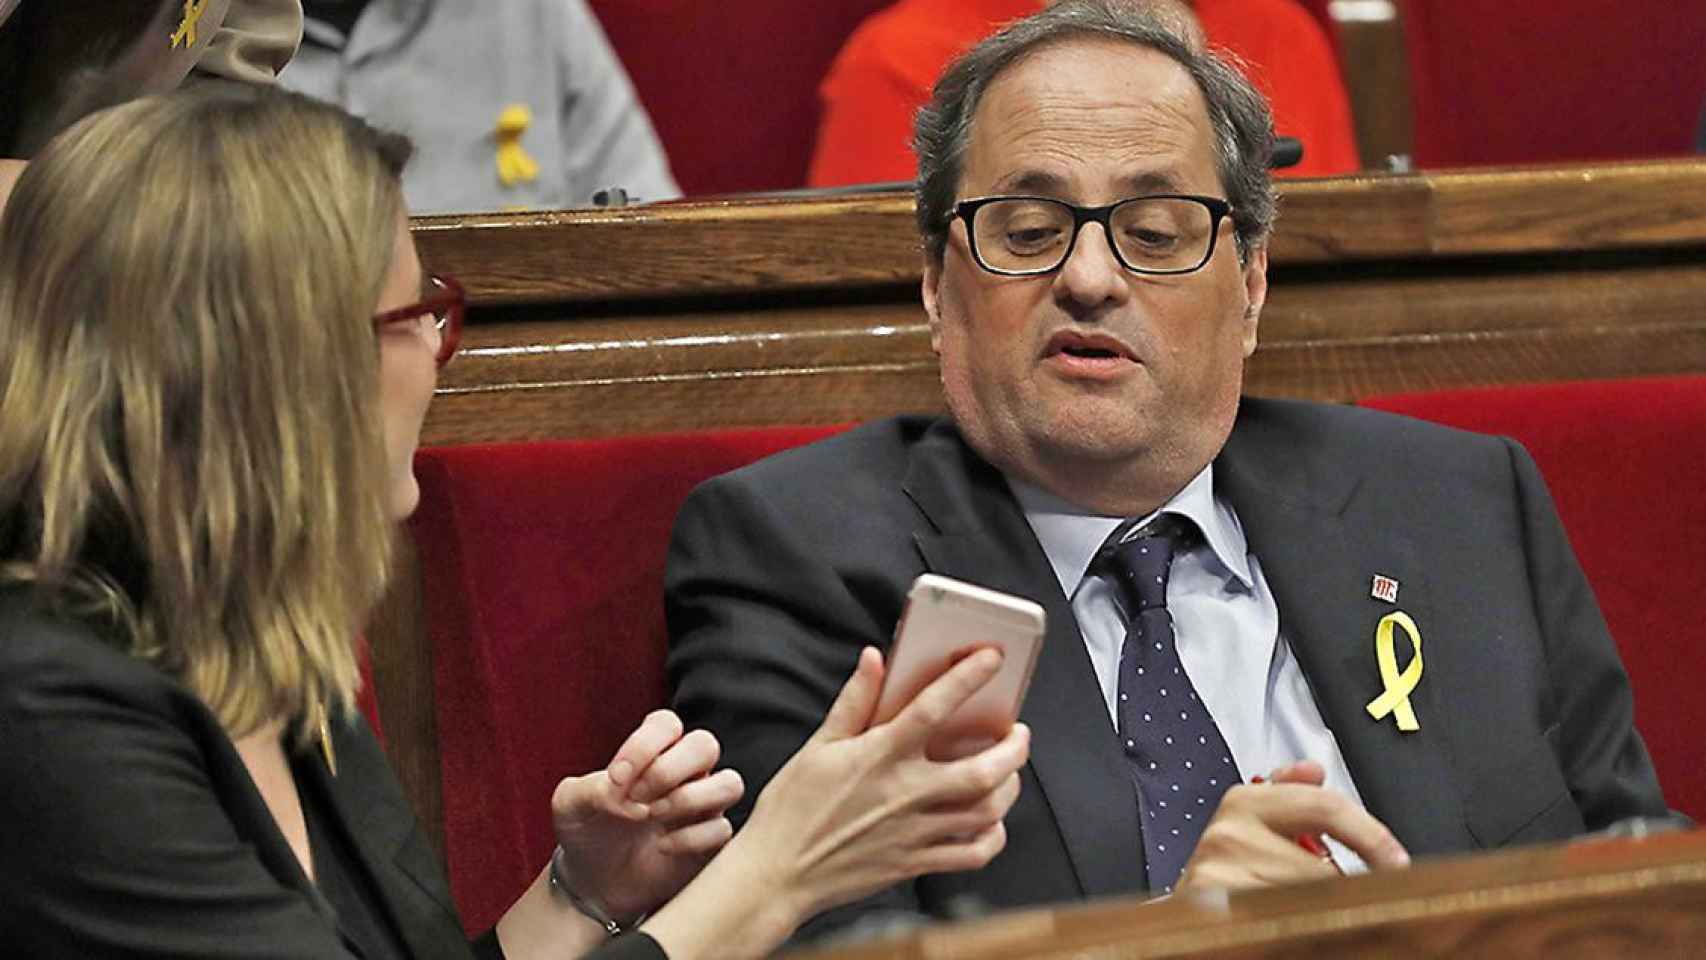 Quim Torra mira el móvil que le muestra Elsa Artadi en el Parlament / CG